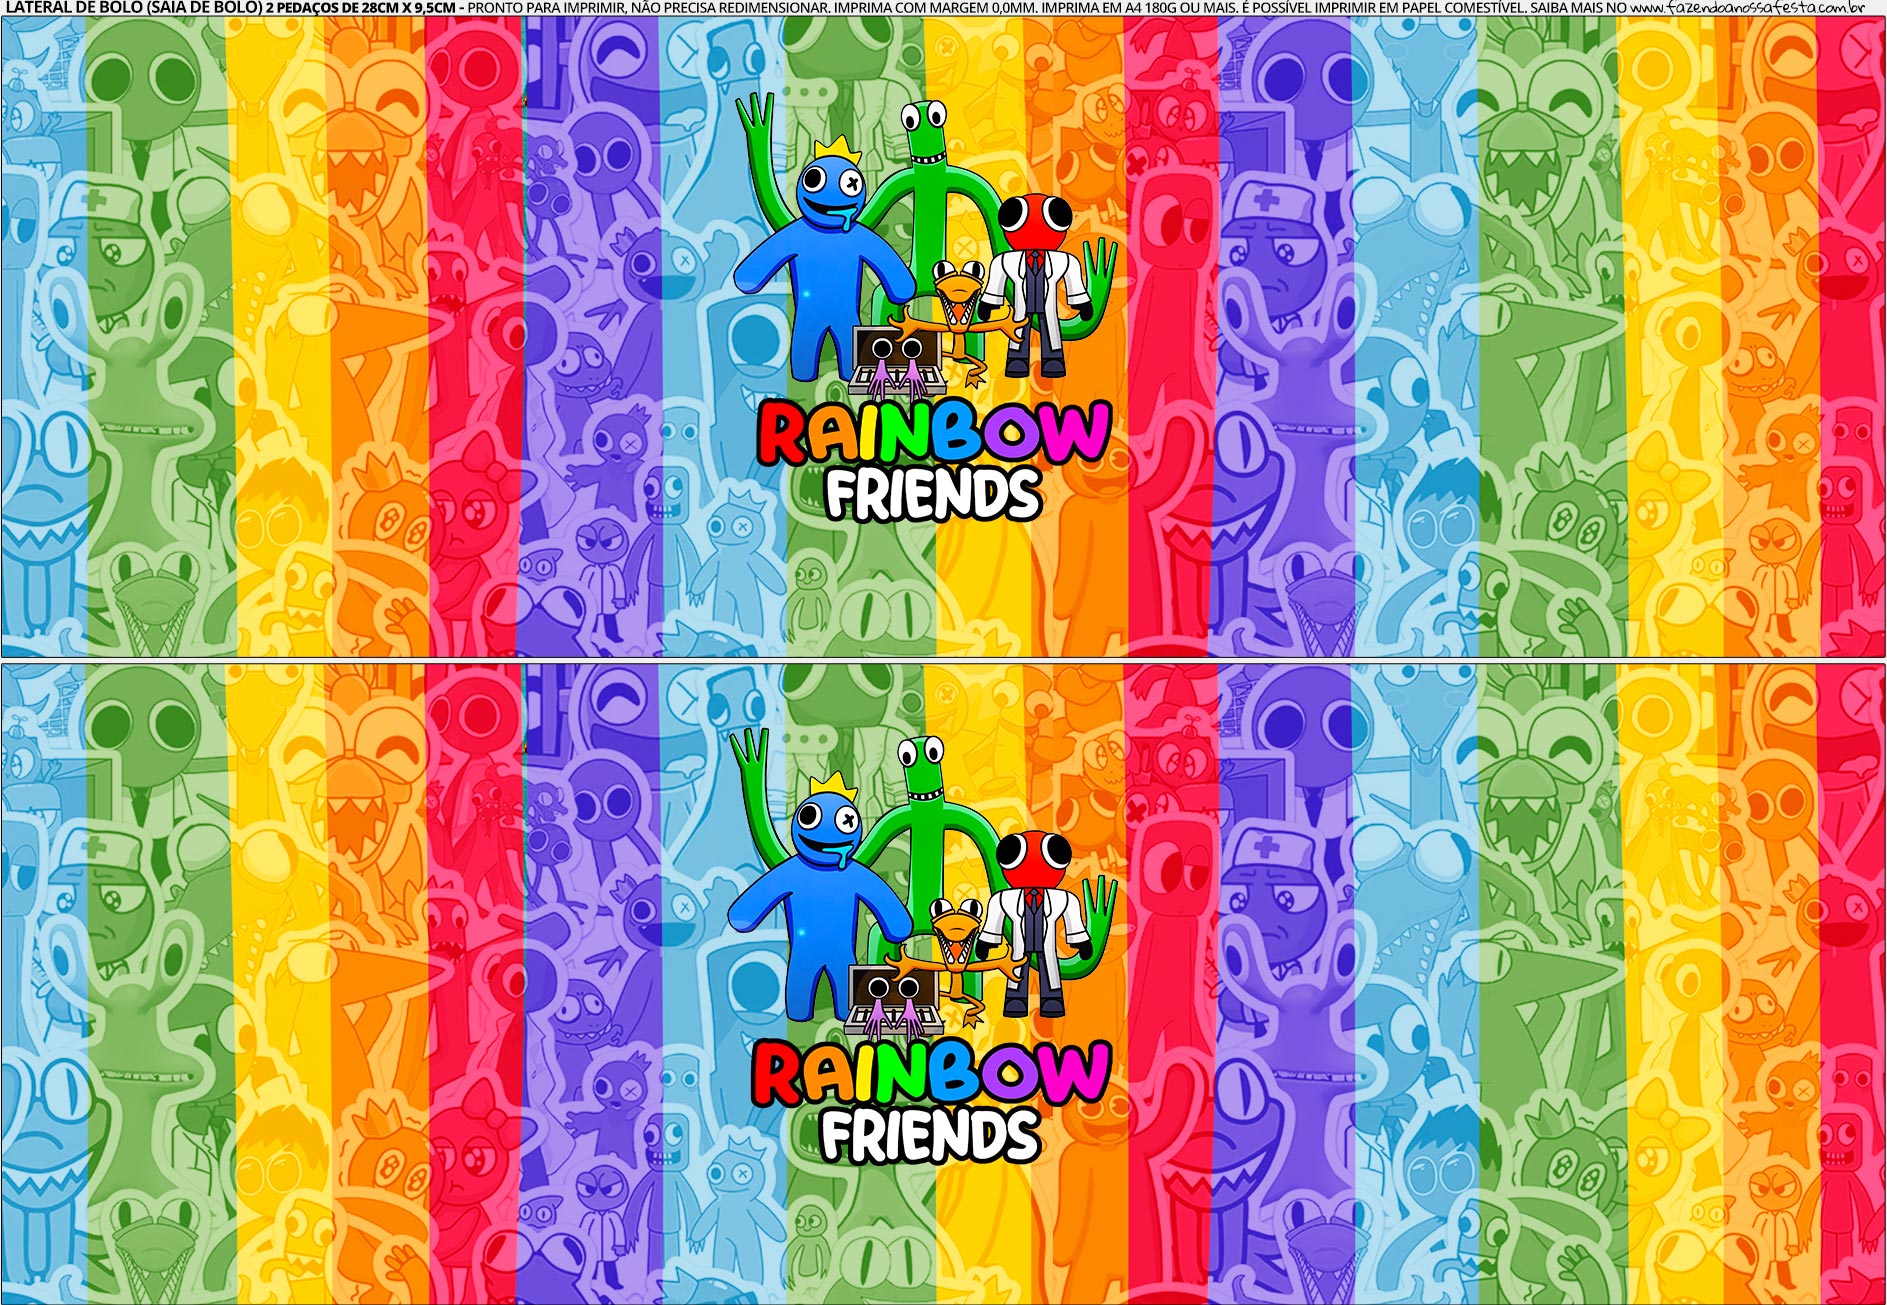 Saia de Bolo Rainbow Friends 2 - Fazendo a Nossa Festa